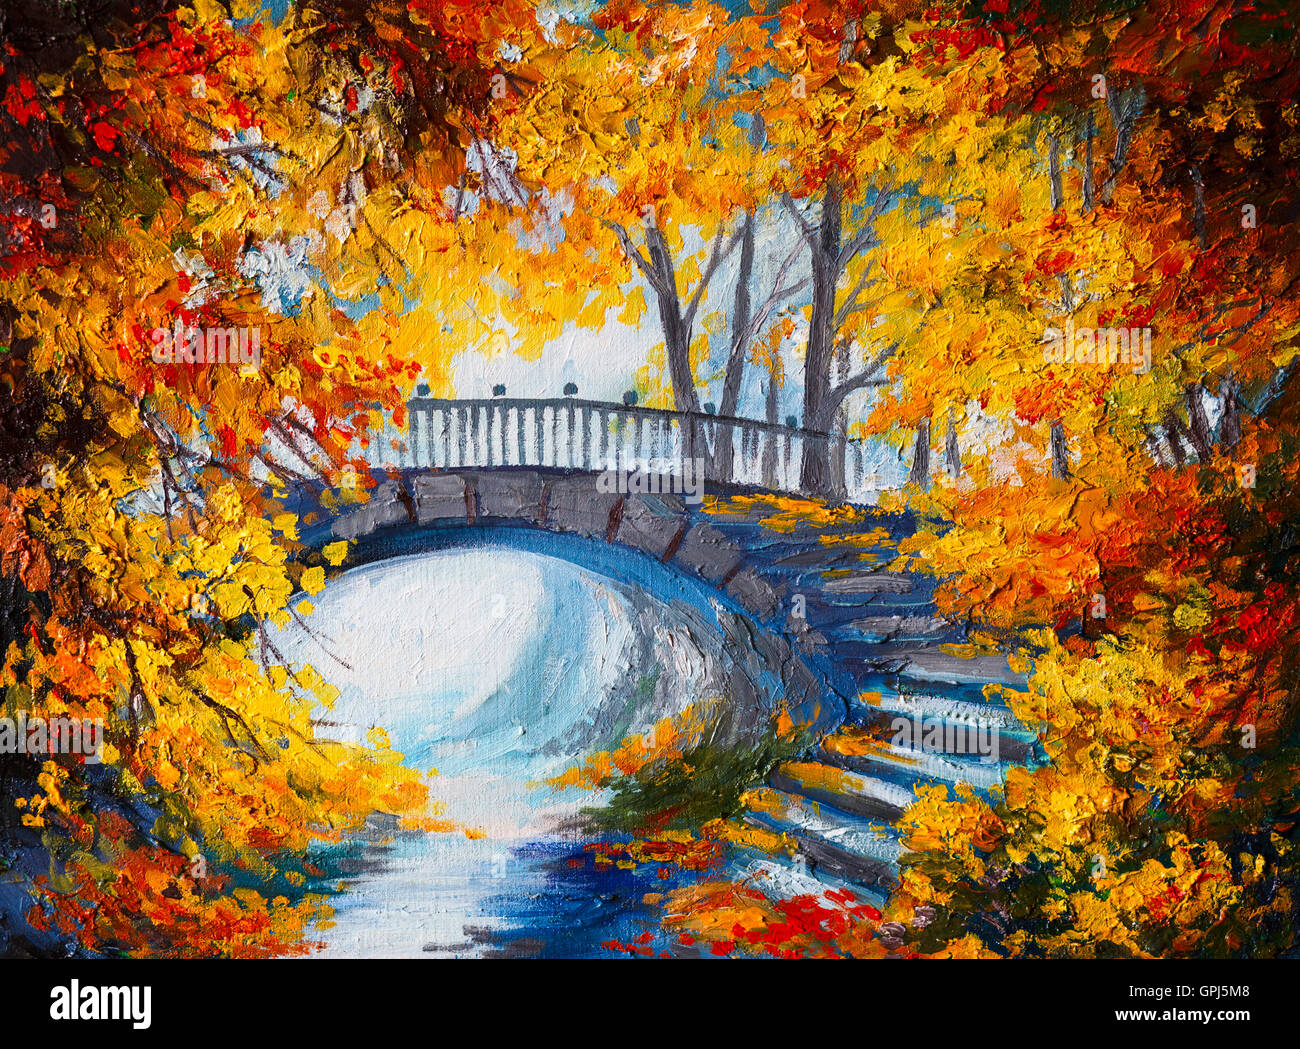 Peinture à l'huile - forêt d'automne avec une route et pont sur la route, feuilles rouge vif Banque D'Images